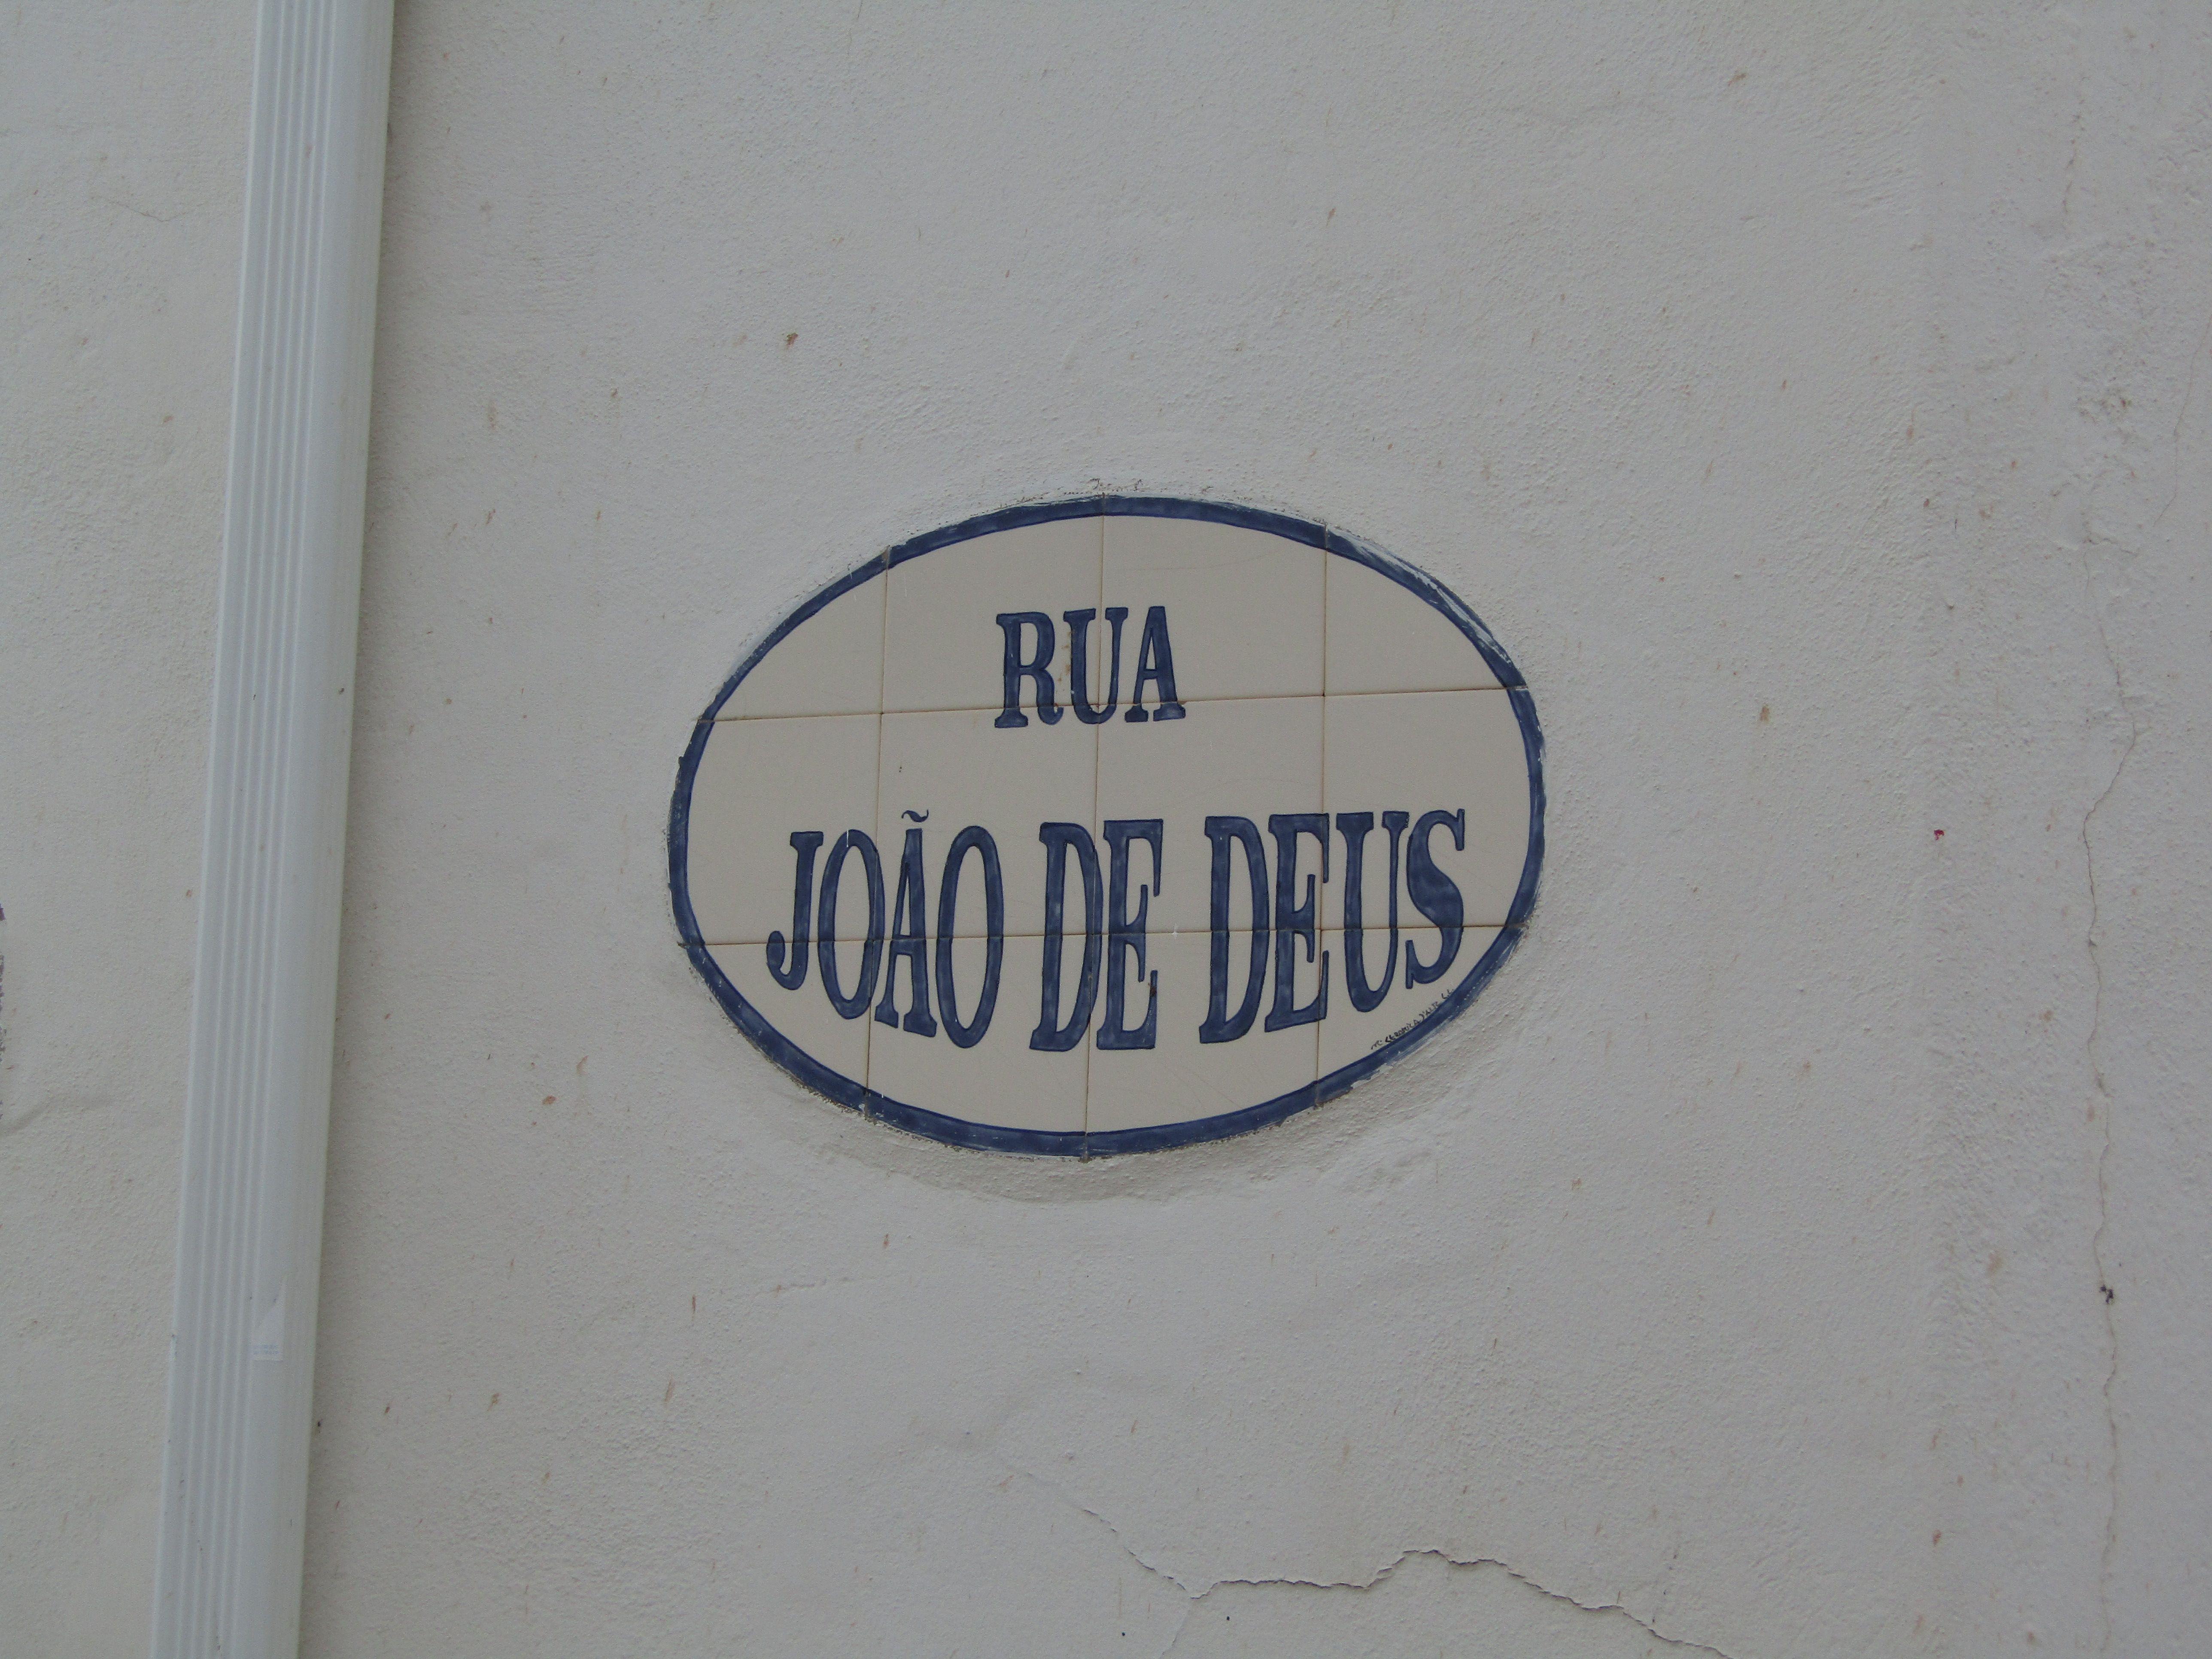 Joao Name Logo - 2018 02 14 Street Name Sign, Rua João De Deus